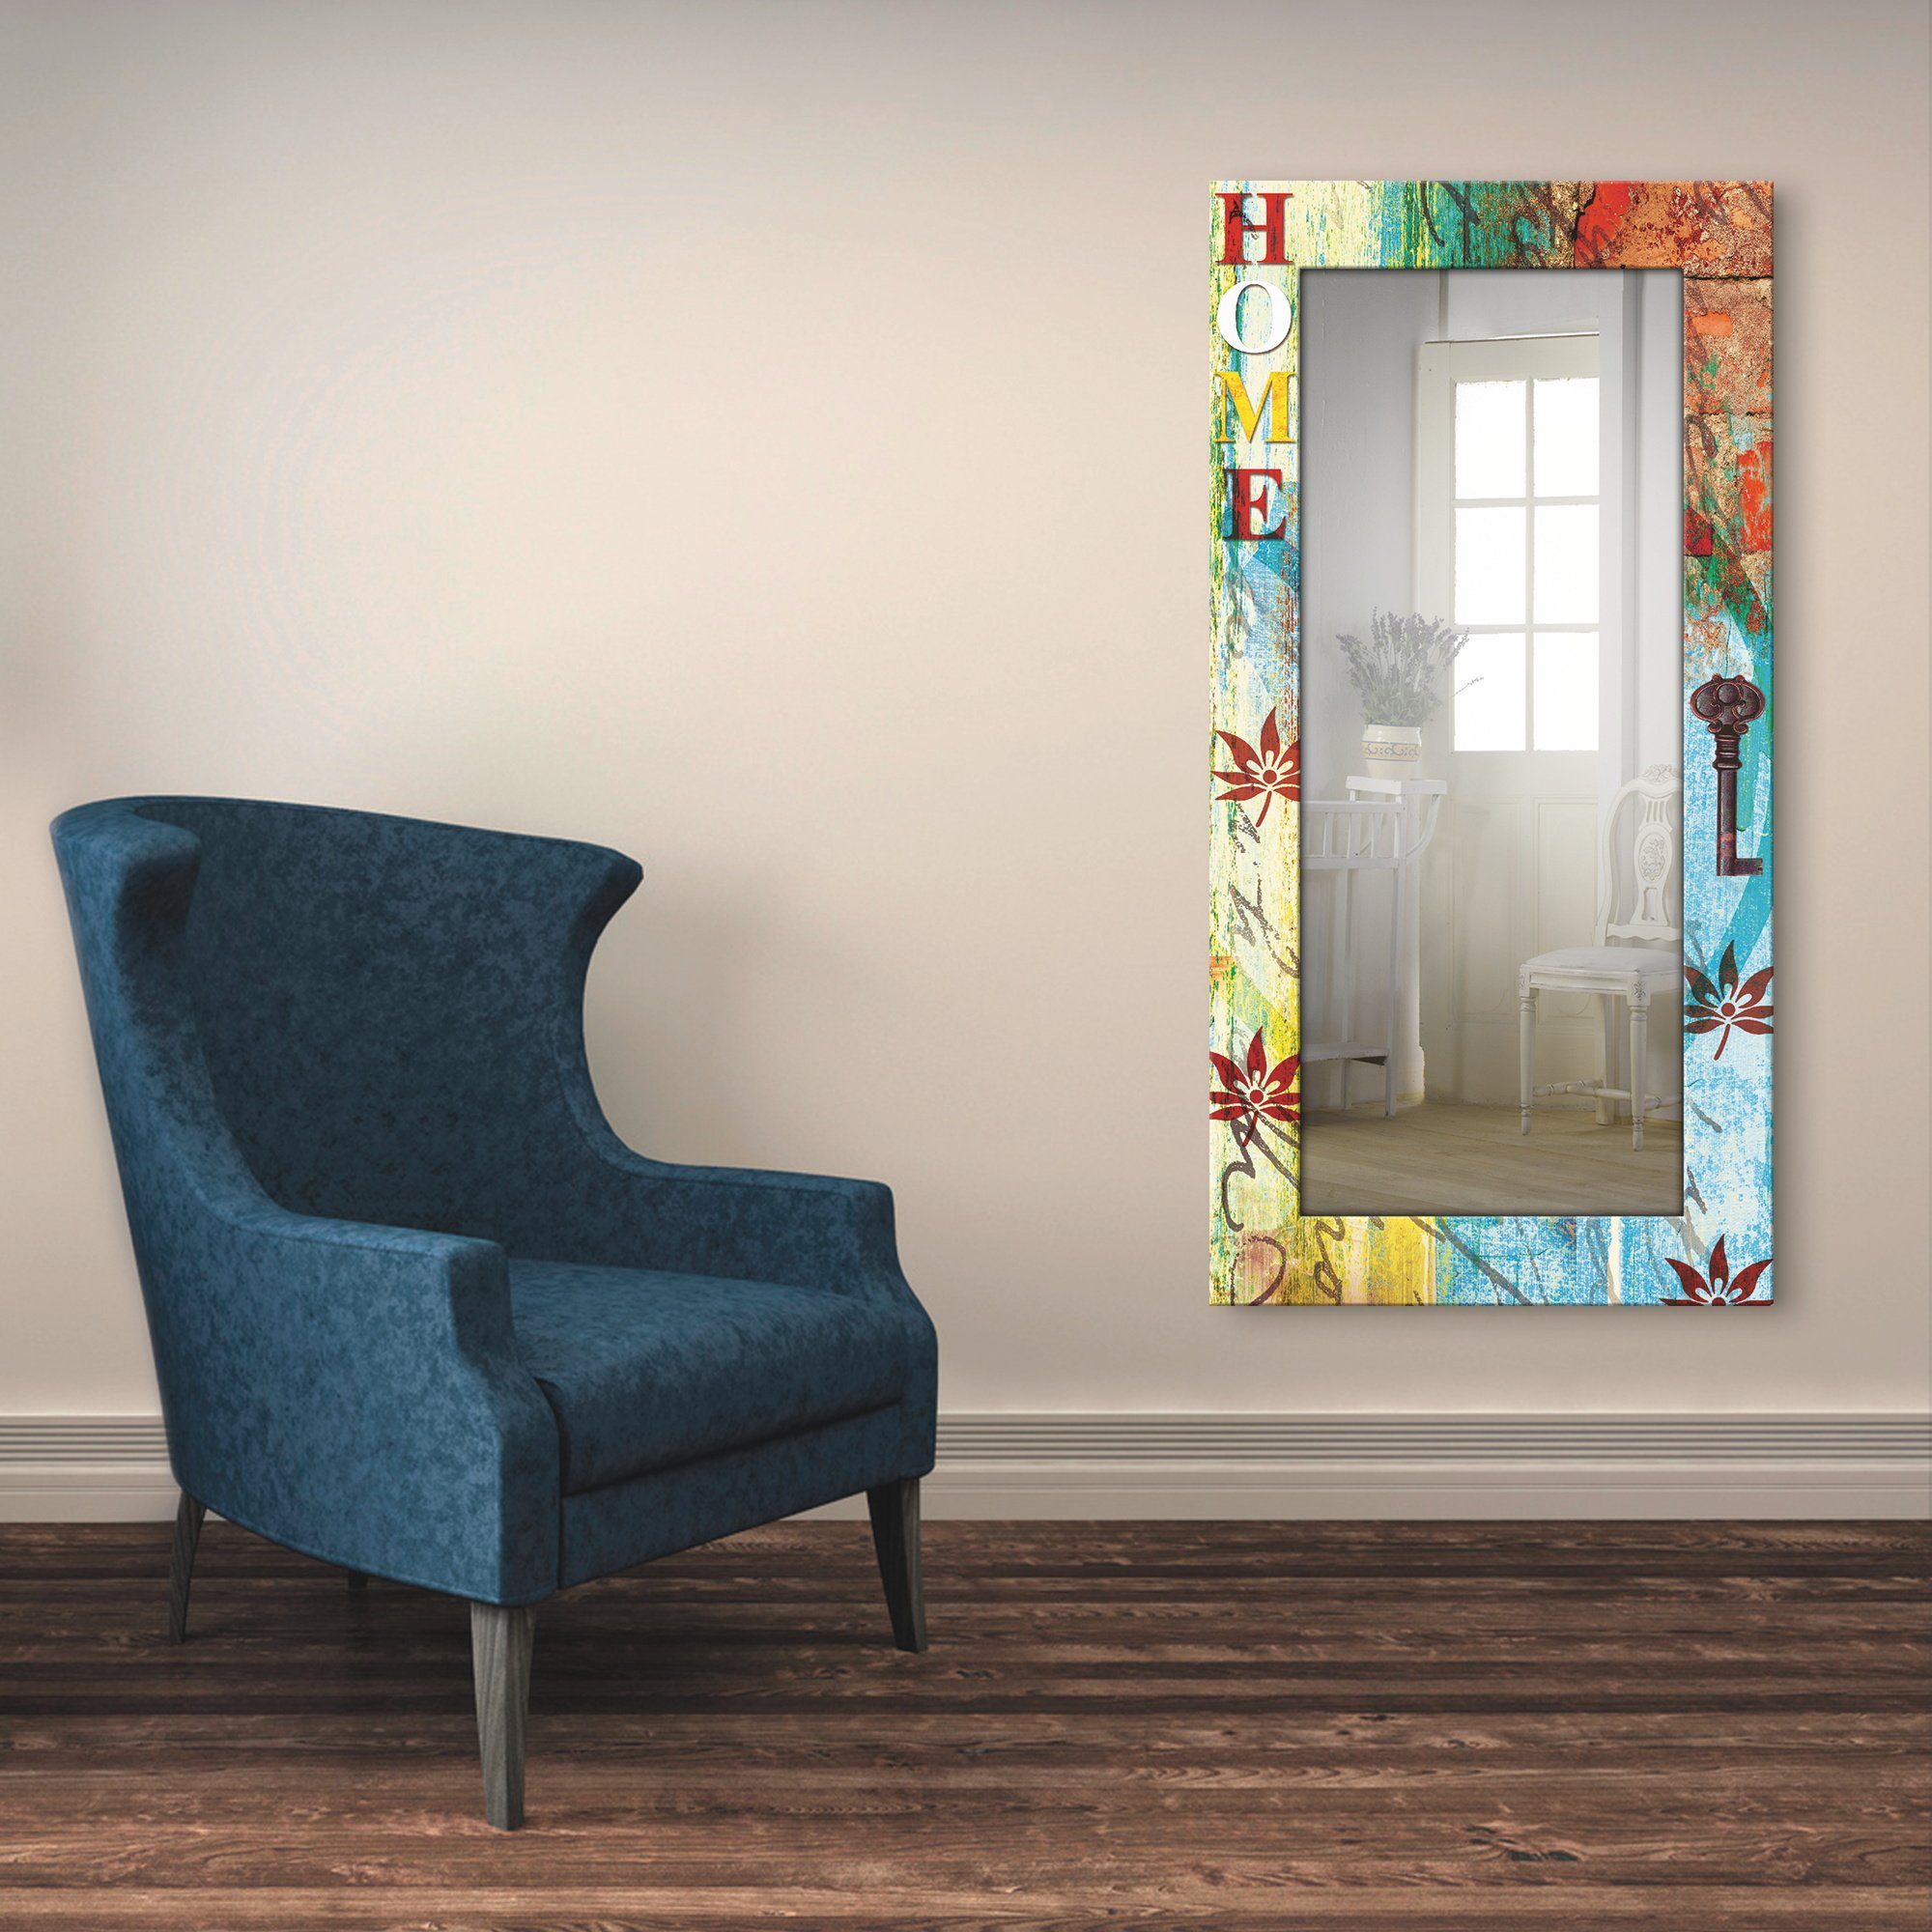 Artland Wandspiegel Kleurrijk ingelijste spiegel voor hele lichaam met motiefrand, geschikt voor kleine, smalle hal, halspiegel, mirror spiegel omrand om te hangen bestellen bij | OTTO